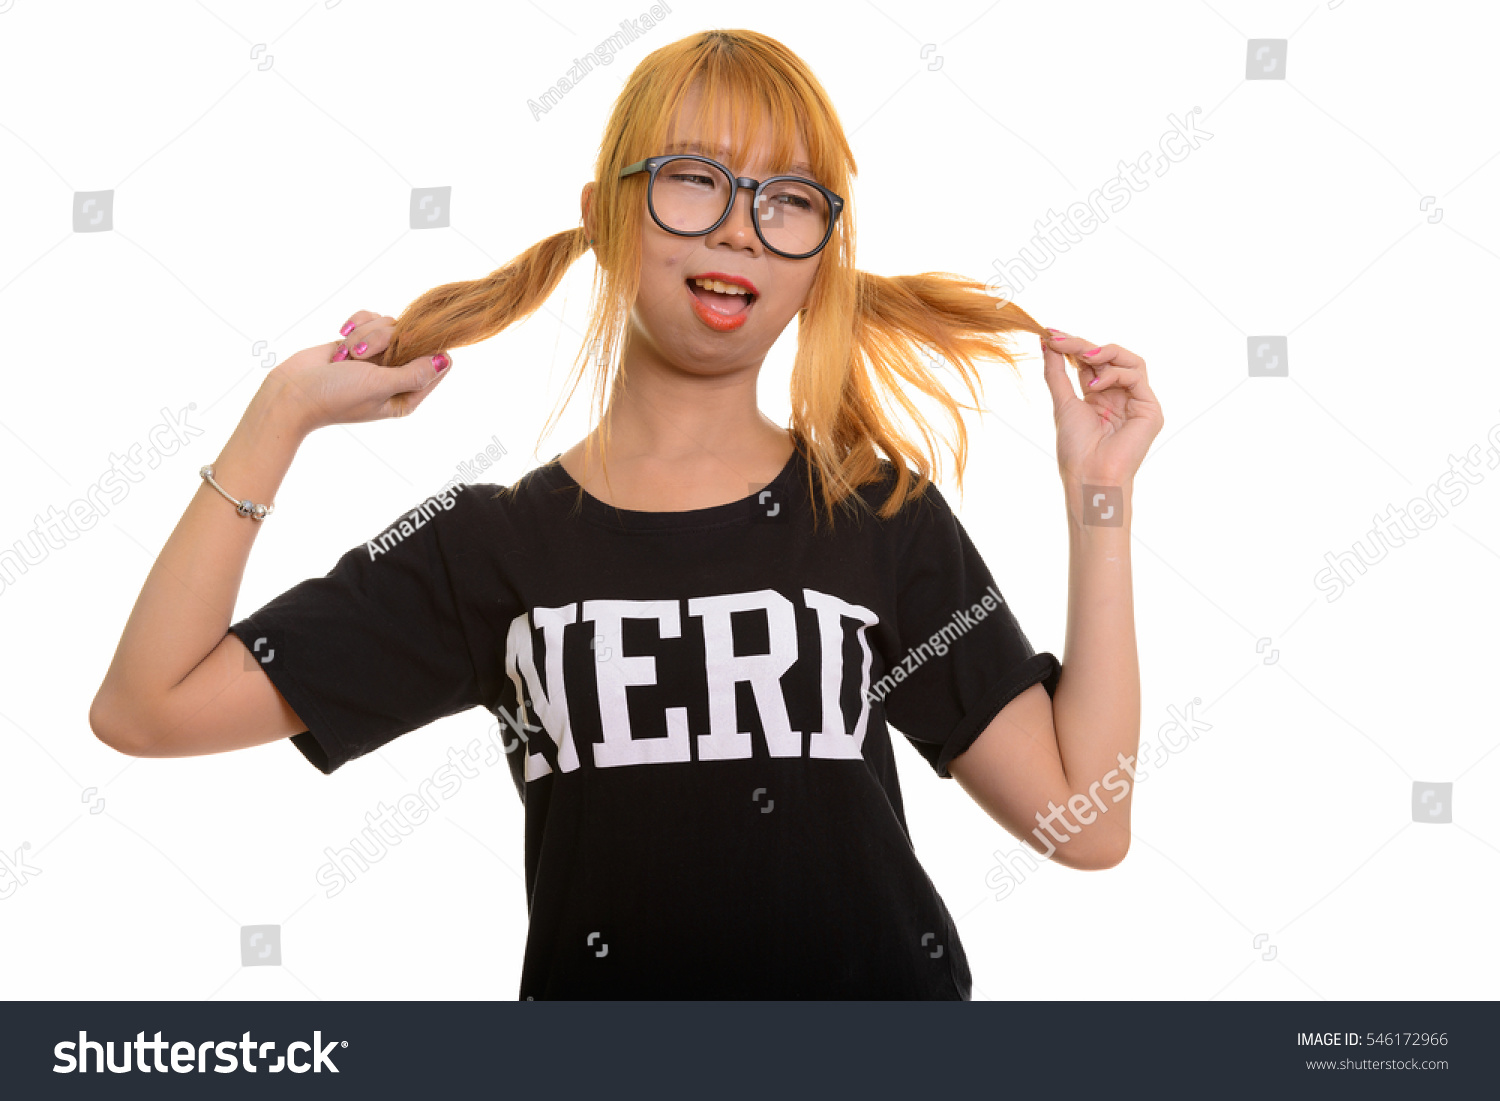 Grinning nerdy girl dances in her underwear